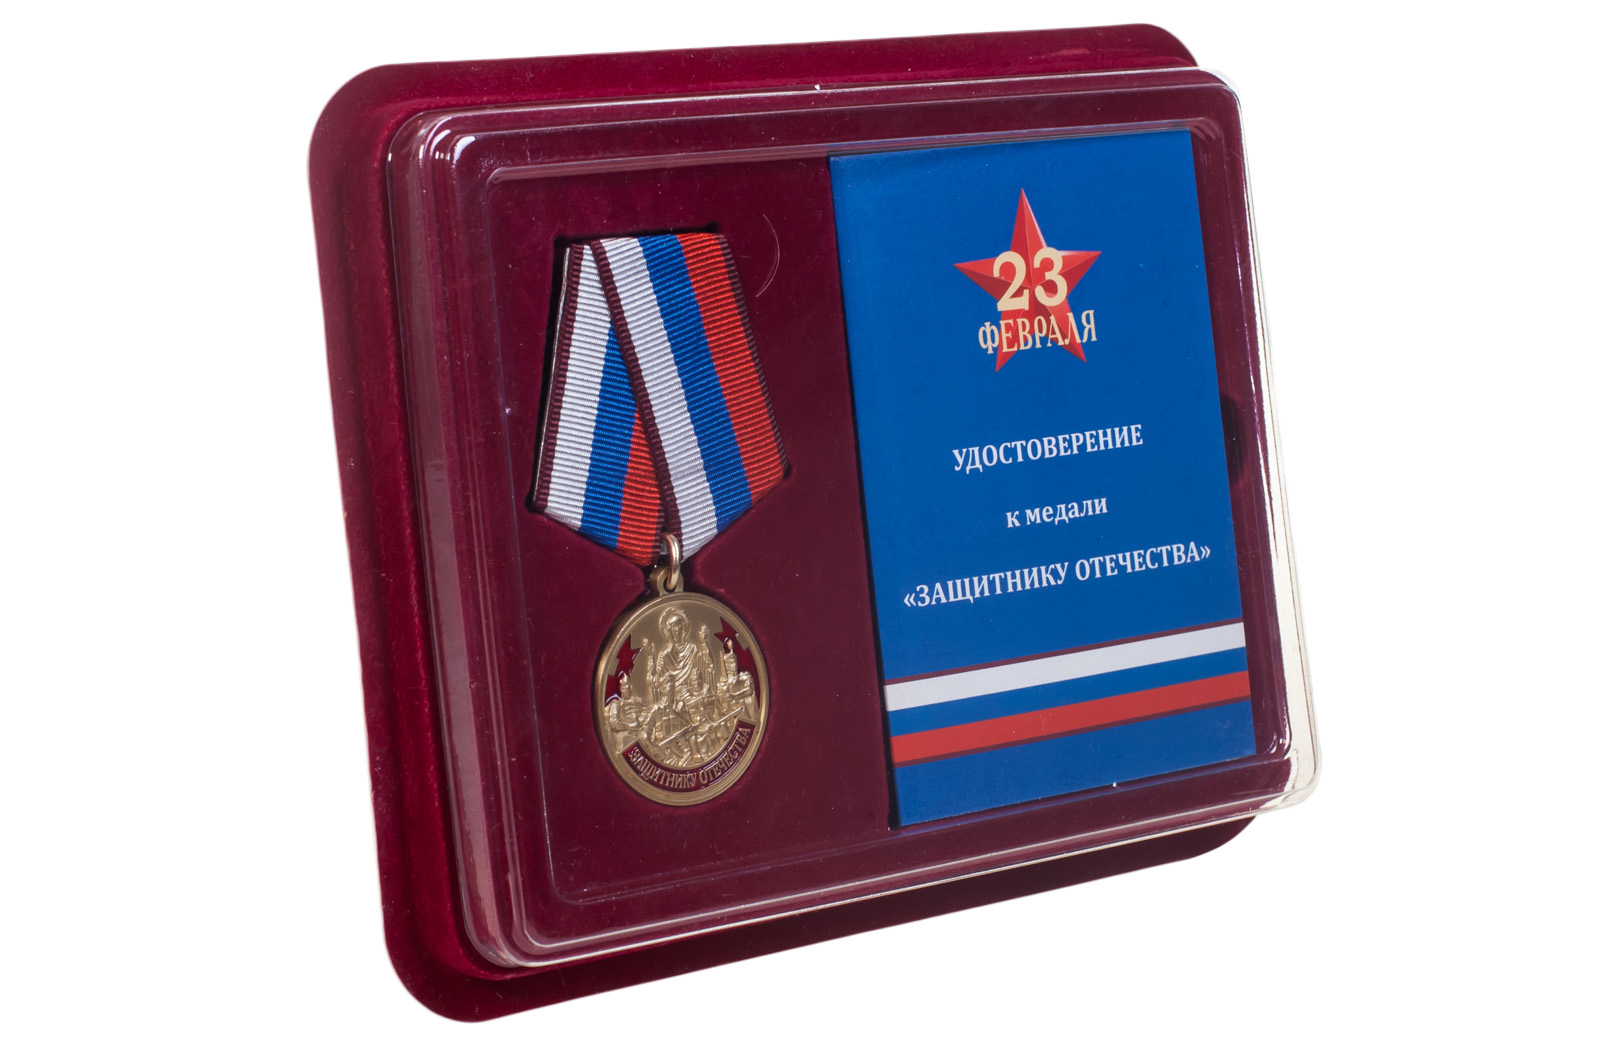 Купить памятная медаль Защитнику Отечества 23 февраля выгодно оптом